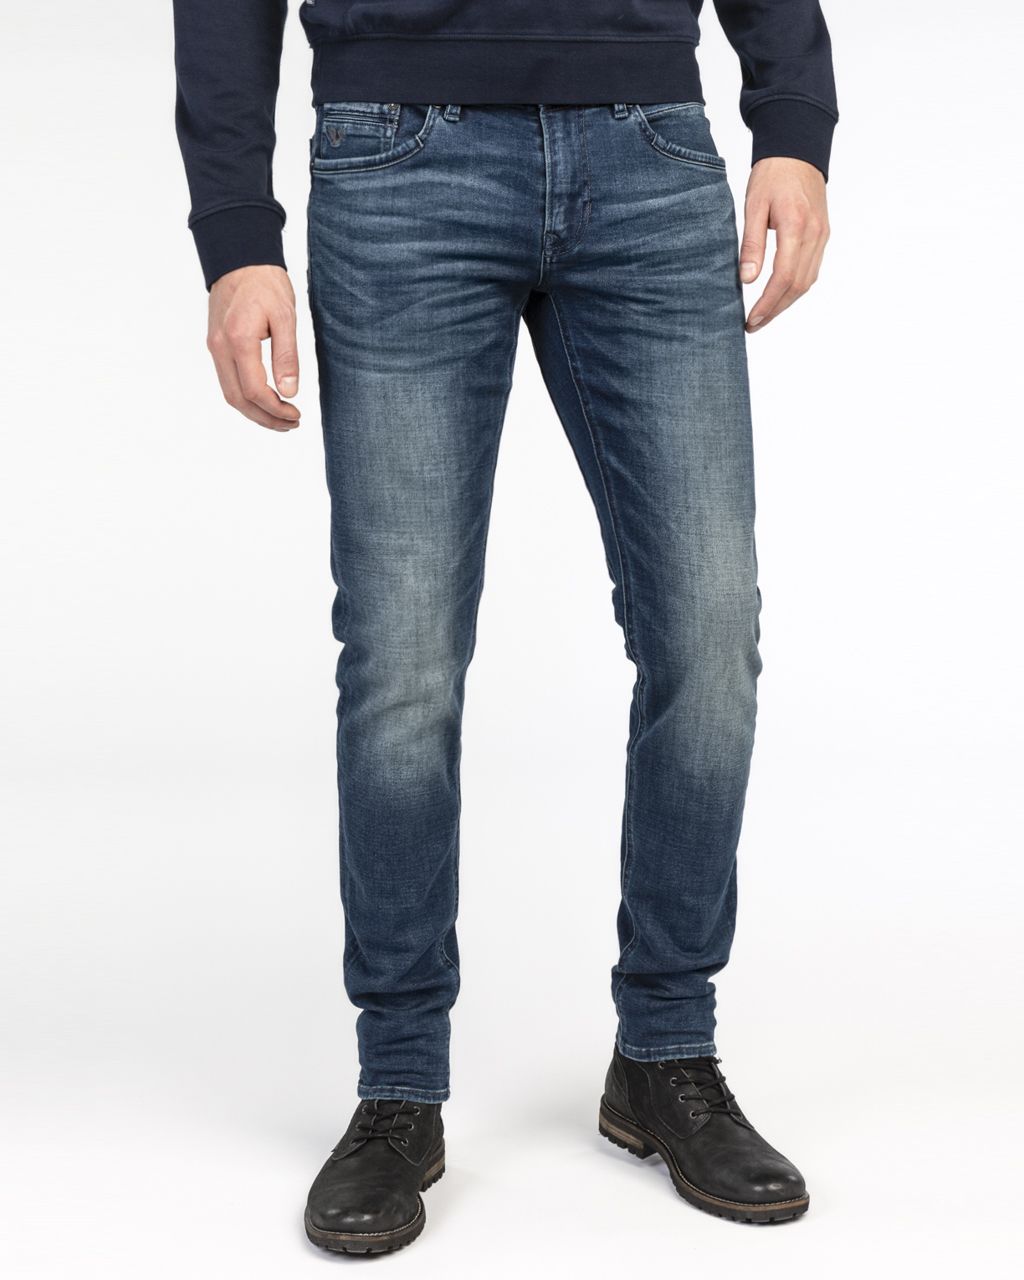 PME Legend Tailwheel Jeans  Blauw 062081-001-28/30